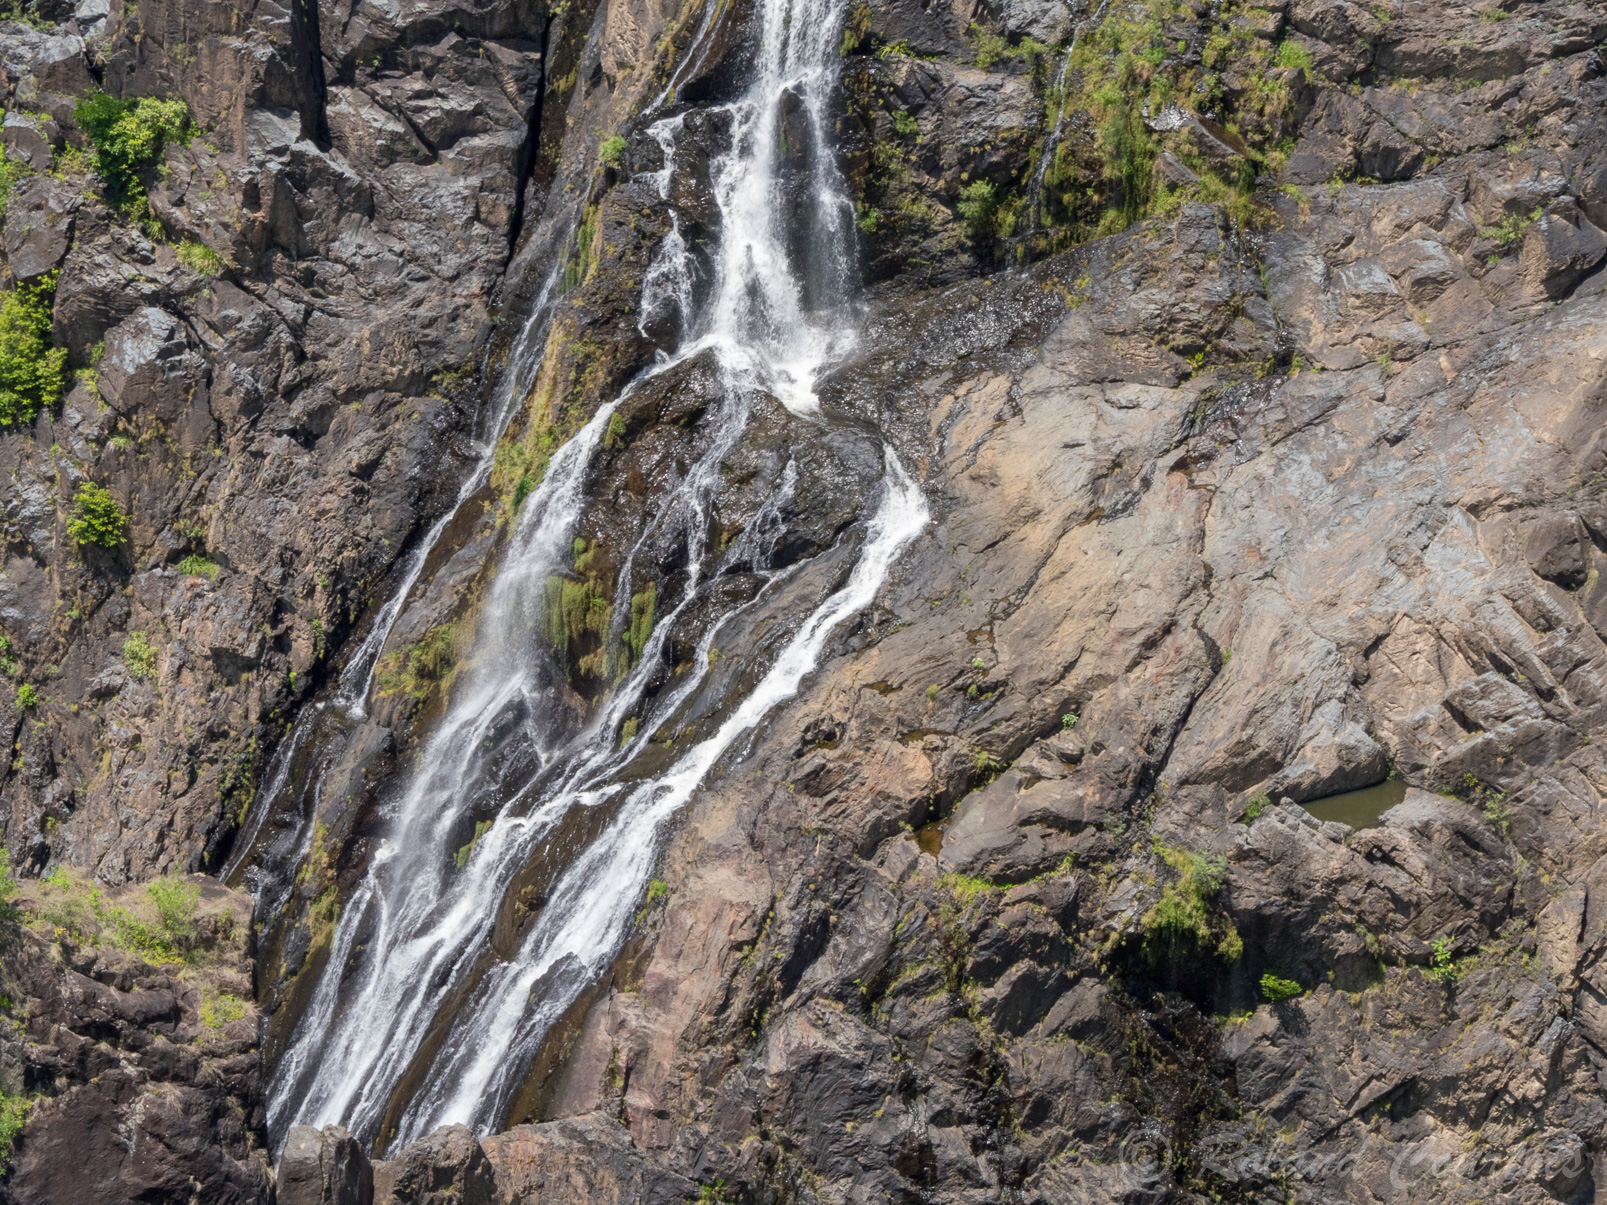 Des belvédères offrent une vue imprenable sur les gorges et les chutes Barron.